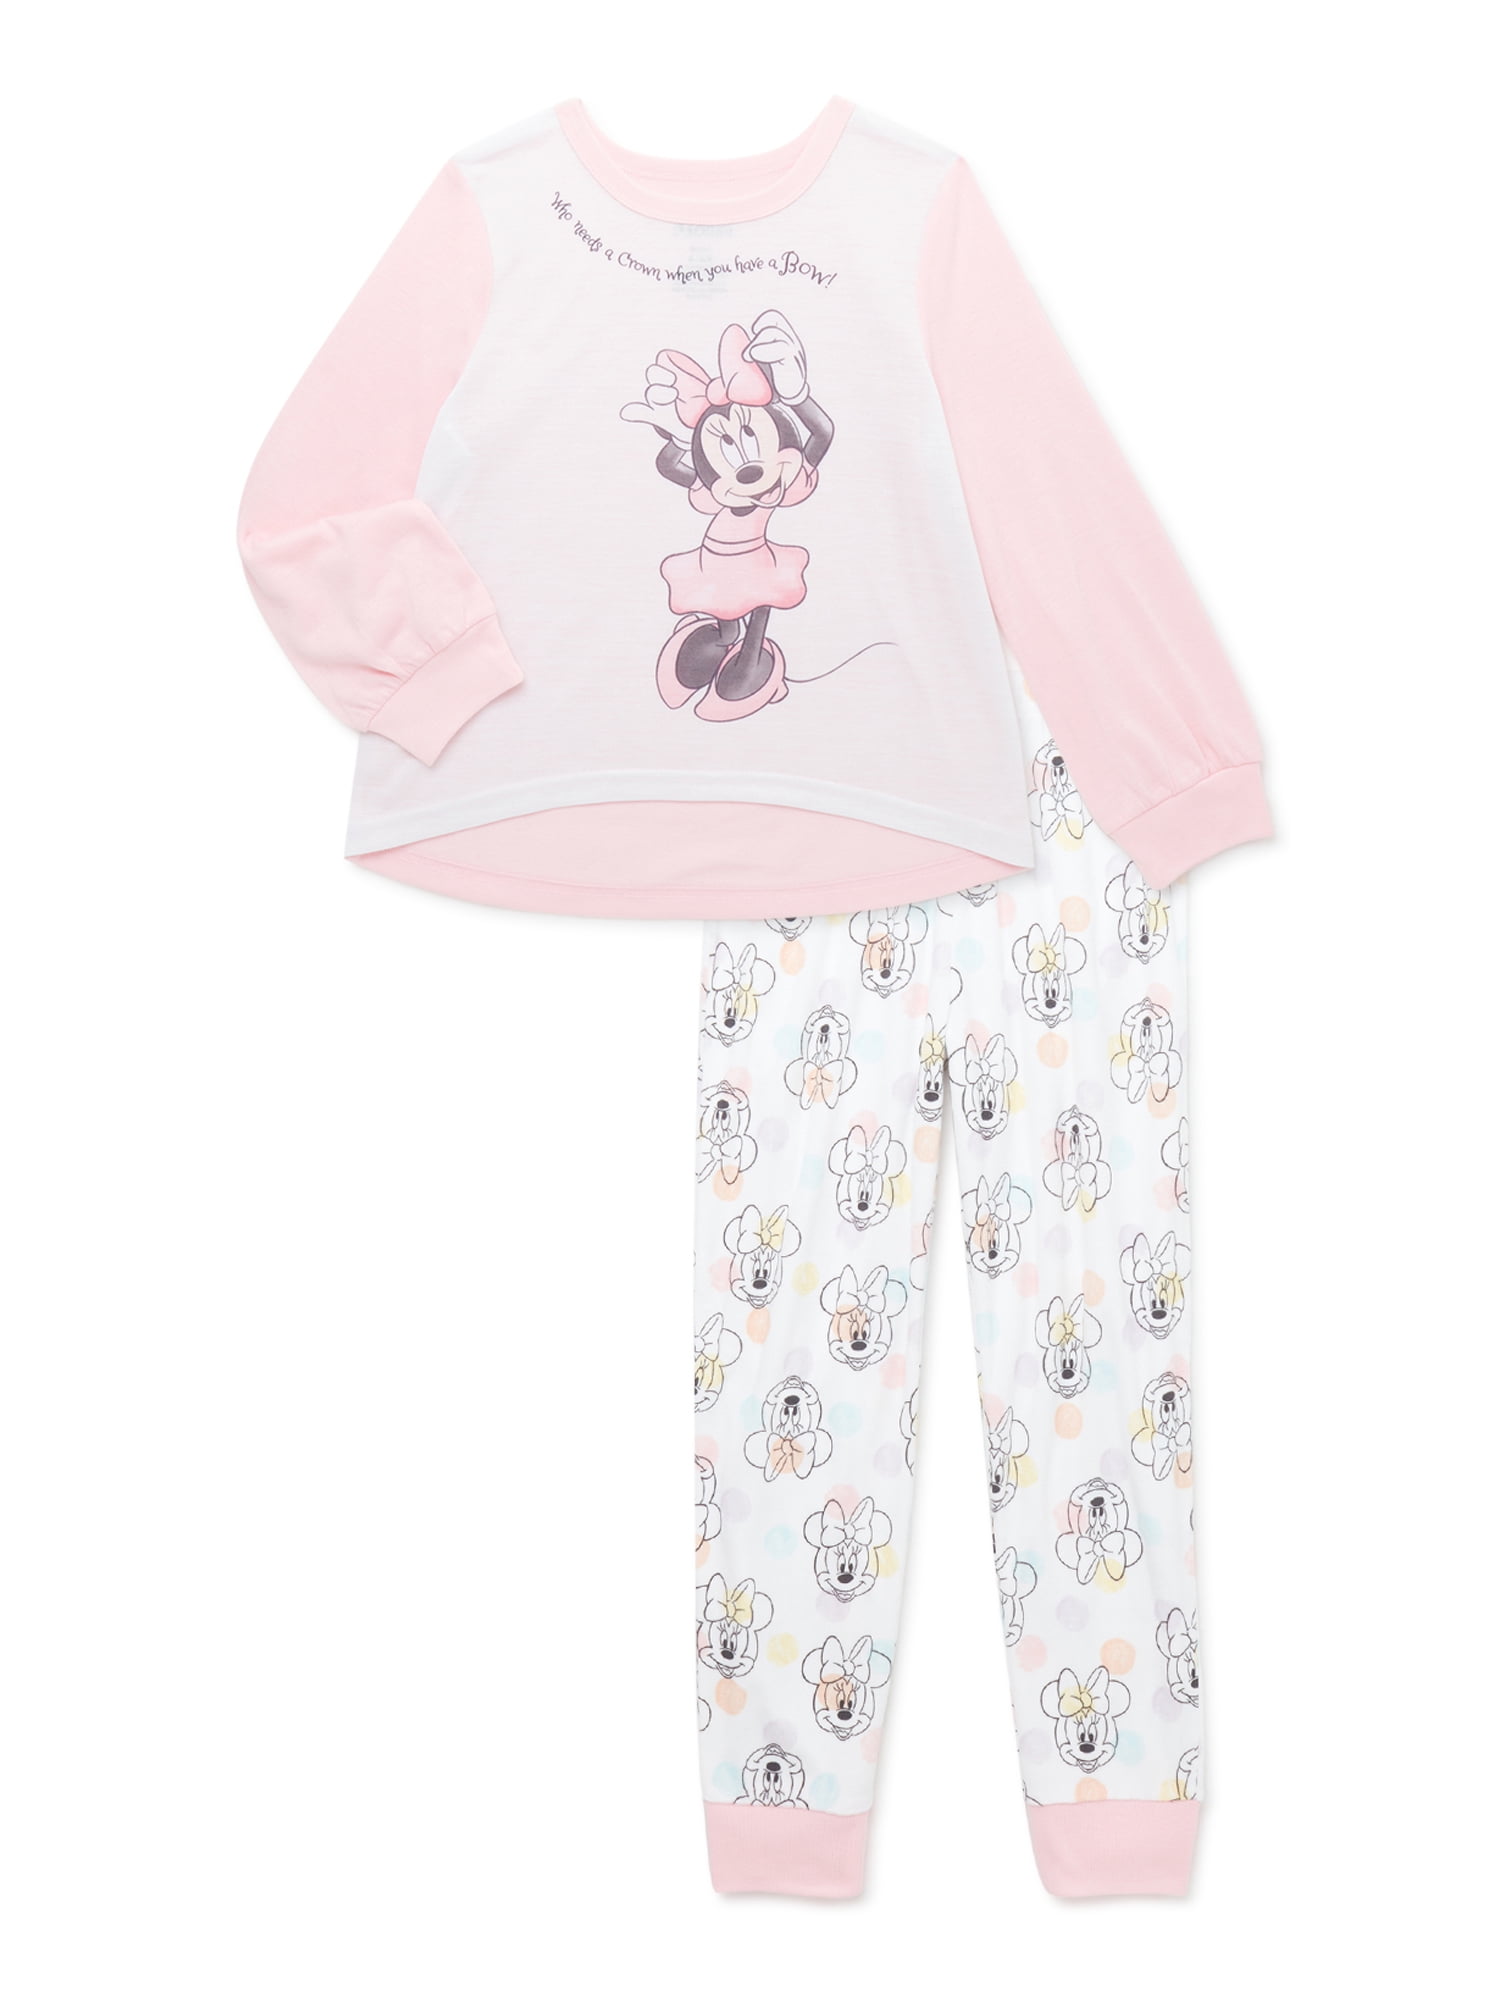 Baby Boys Girls Mickey Minnie Mouse Disney Pyjamas Pajamas Gift 18-24 Months 